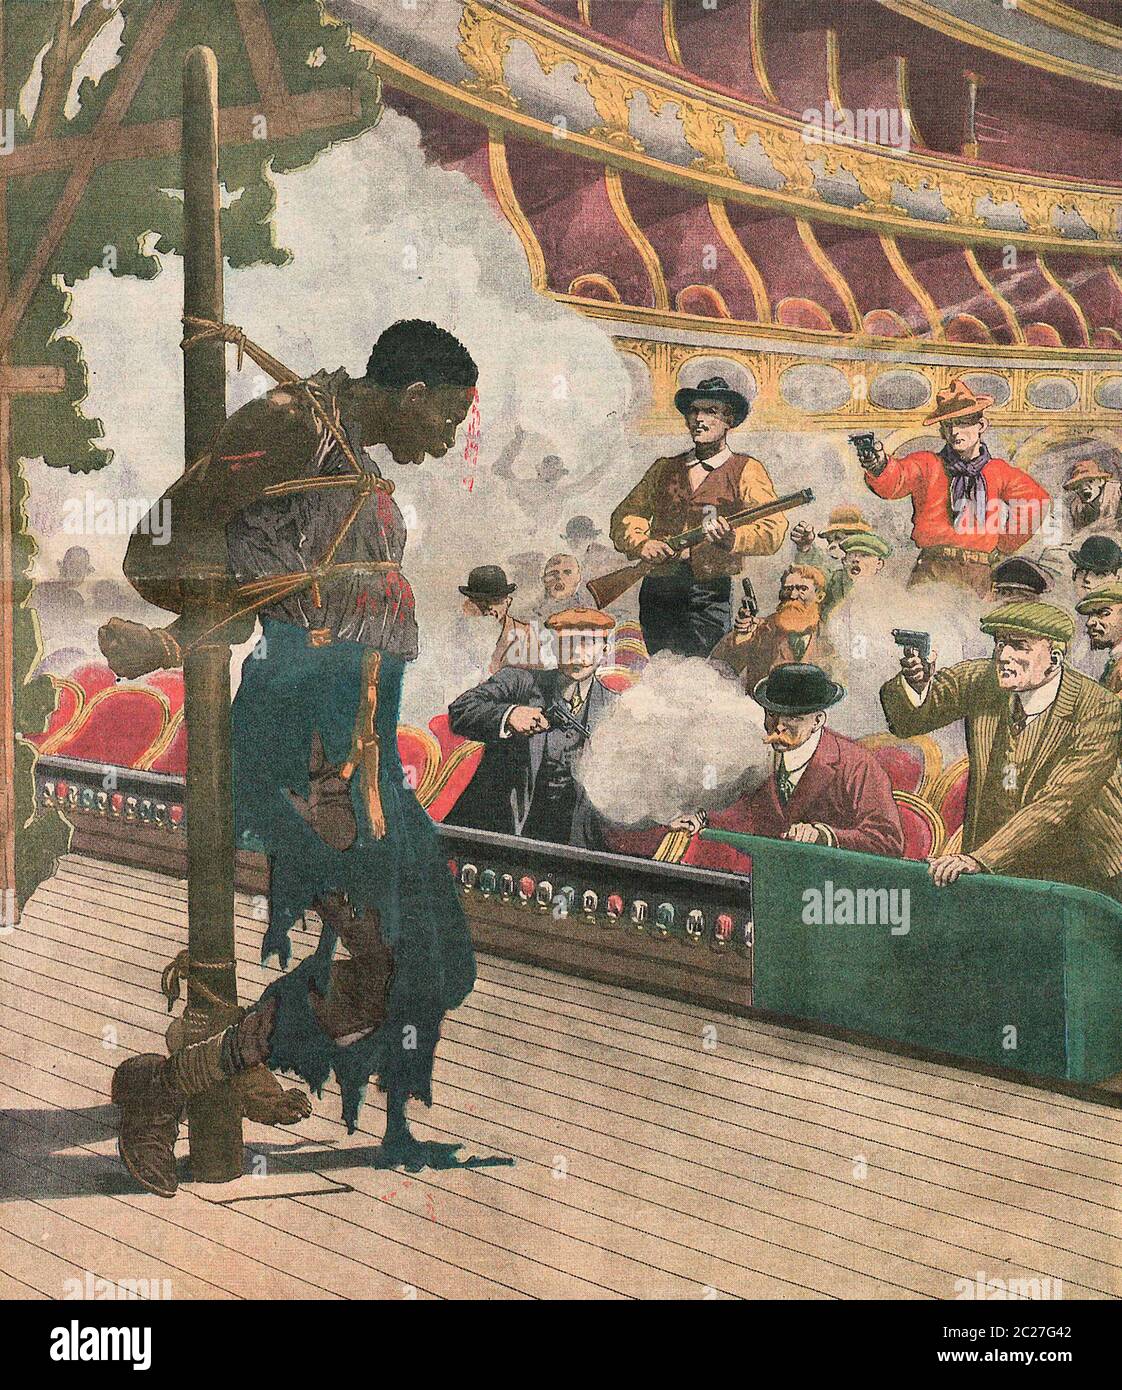 Linchando escena en los Estados Unidos - un hombre negro filmado en un escenario de teatro, alrededor de 1911 Foto de stock